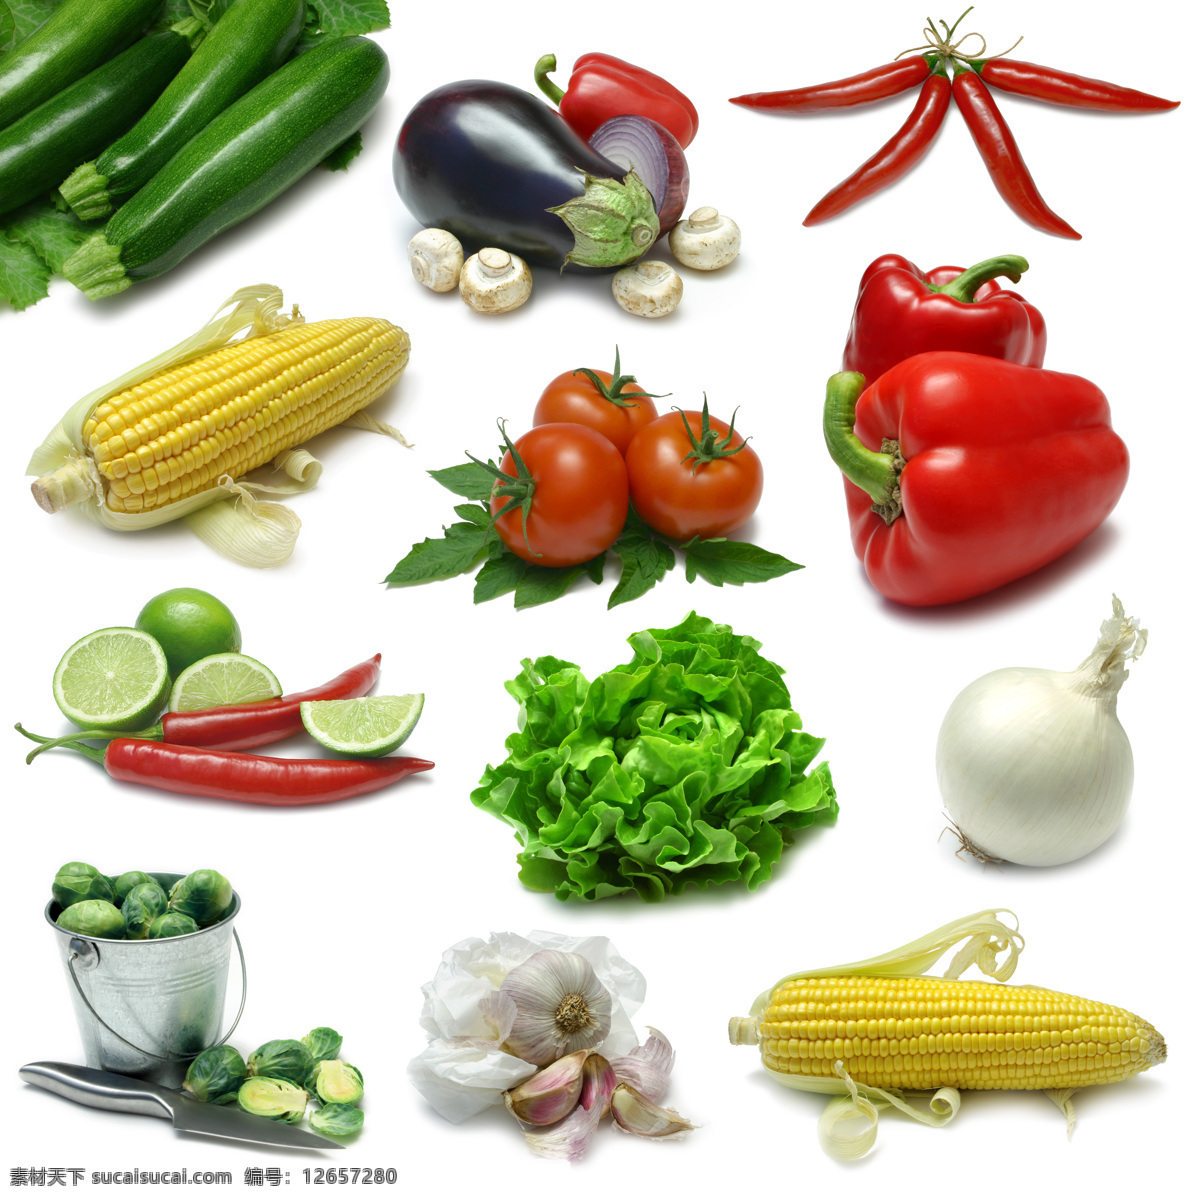 高清 蔬菜 玉米 西红柿 辣椒 茄子 青菜 大蒜 绿色蔬菜 新鲜蔬菜 蔬菜背景 蔬菜图片 餐饮美食